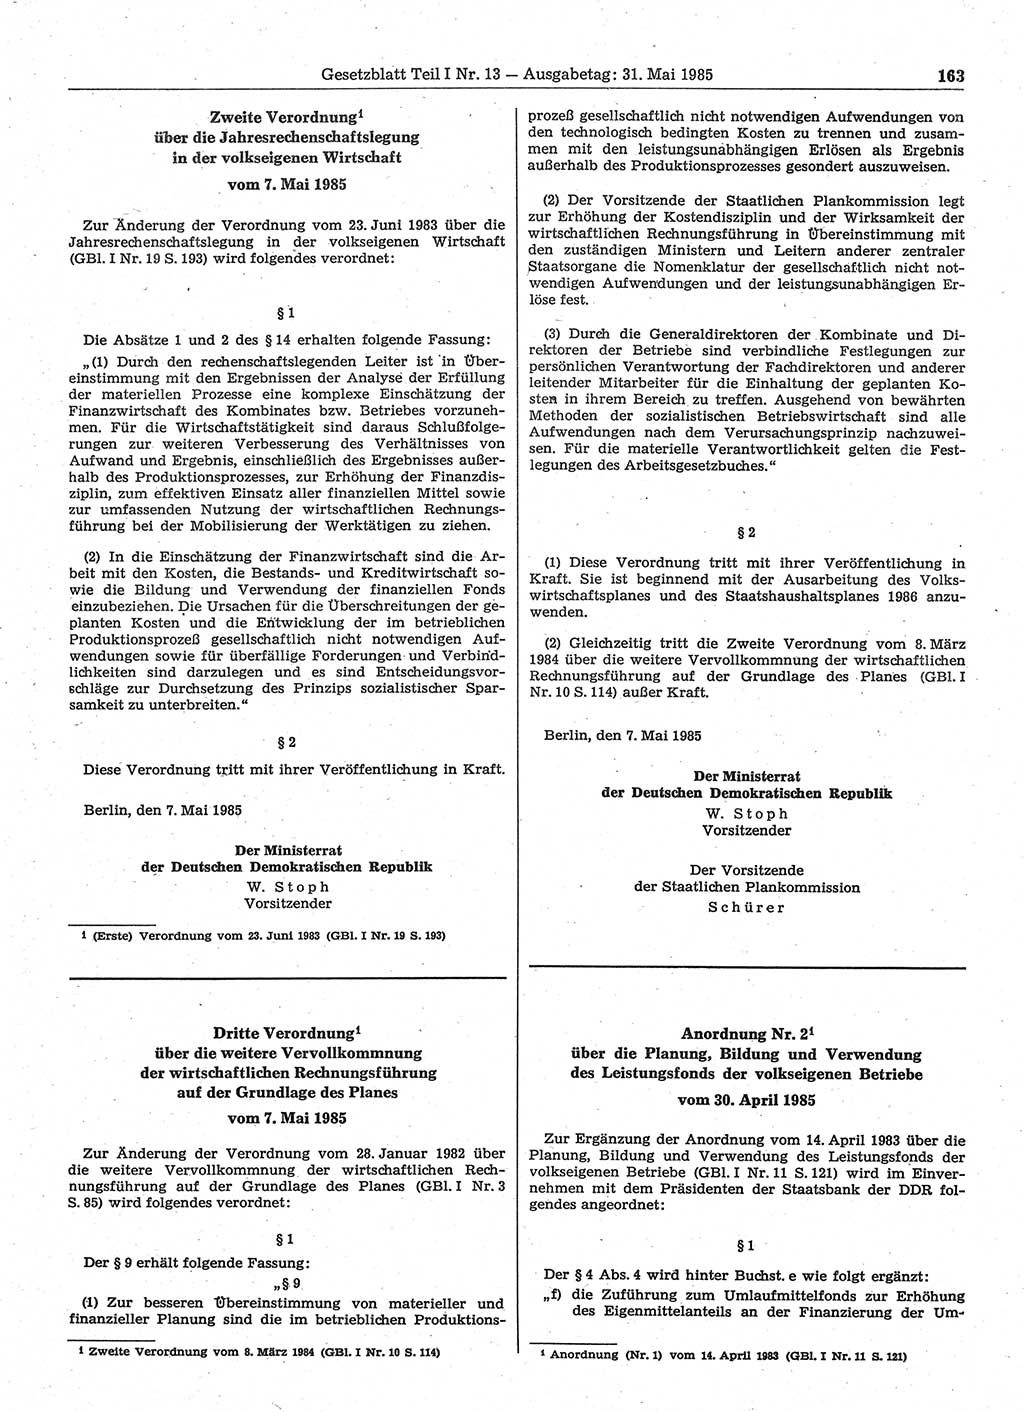 Gesetzblatt (GBl.) der Deutschen Demokratischen Republik (DDR) Teil Ⅰ 1985, Seite 163 (GBl. DDR Ⅰ 1985, S. 163)